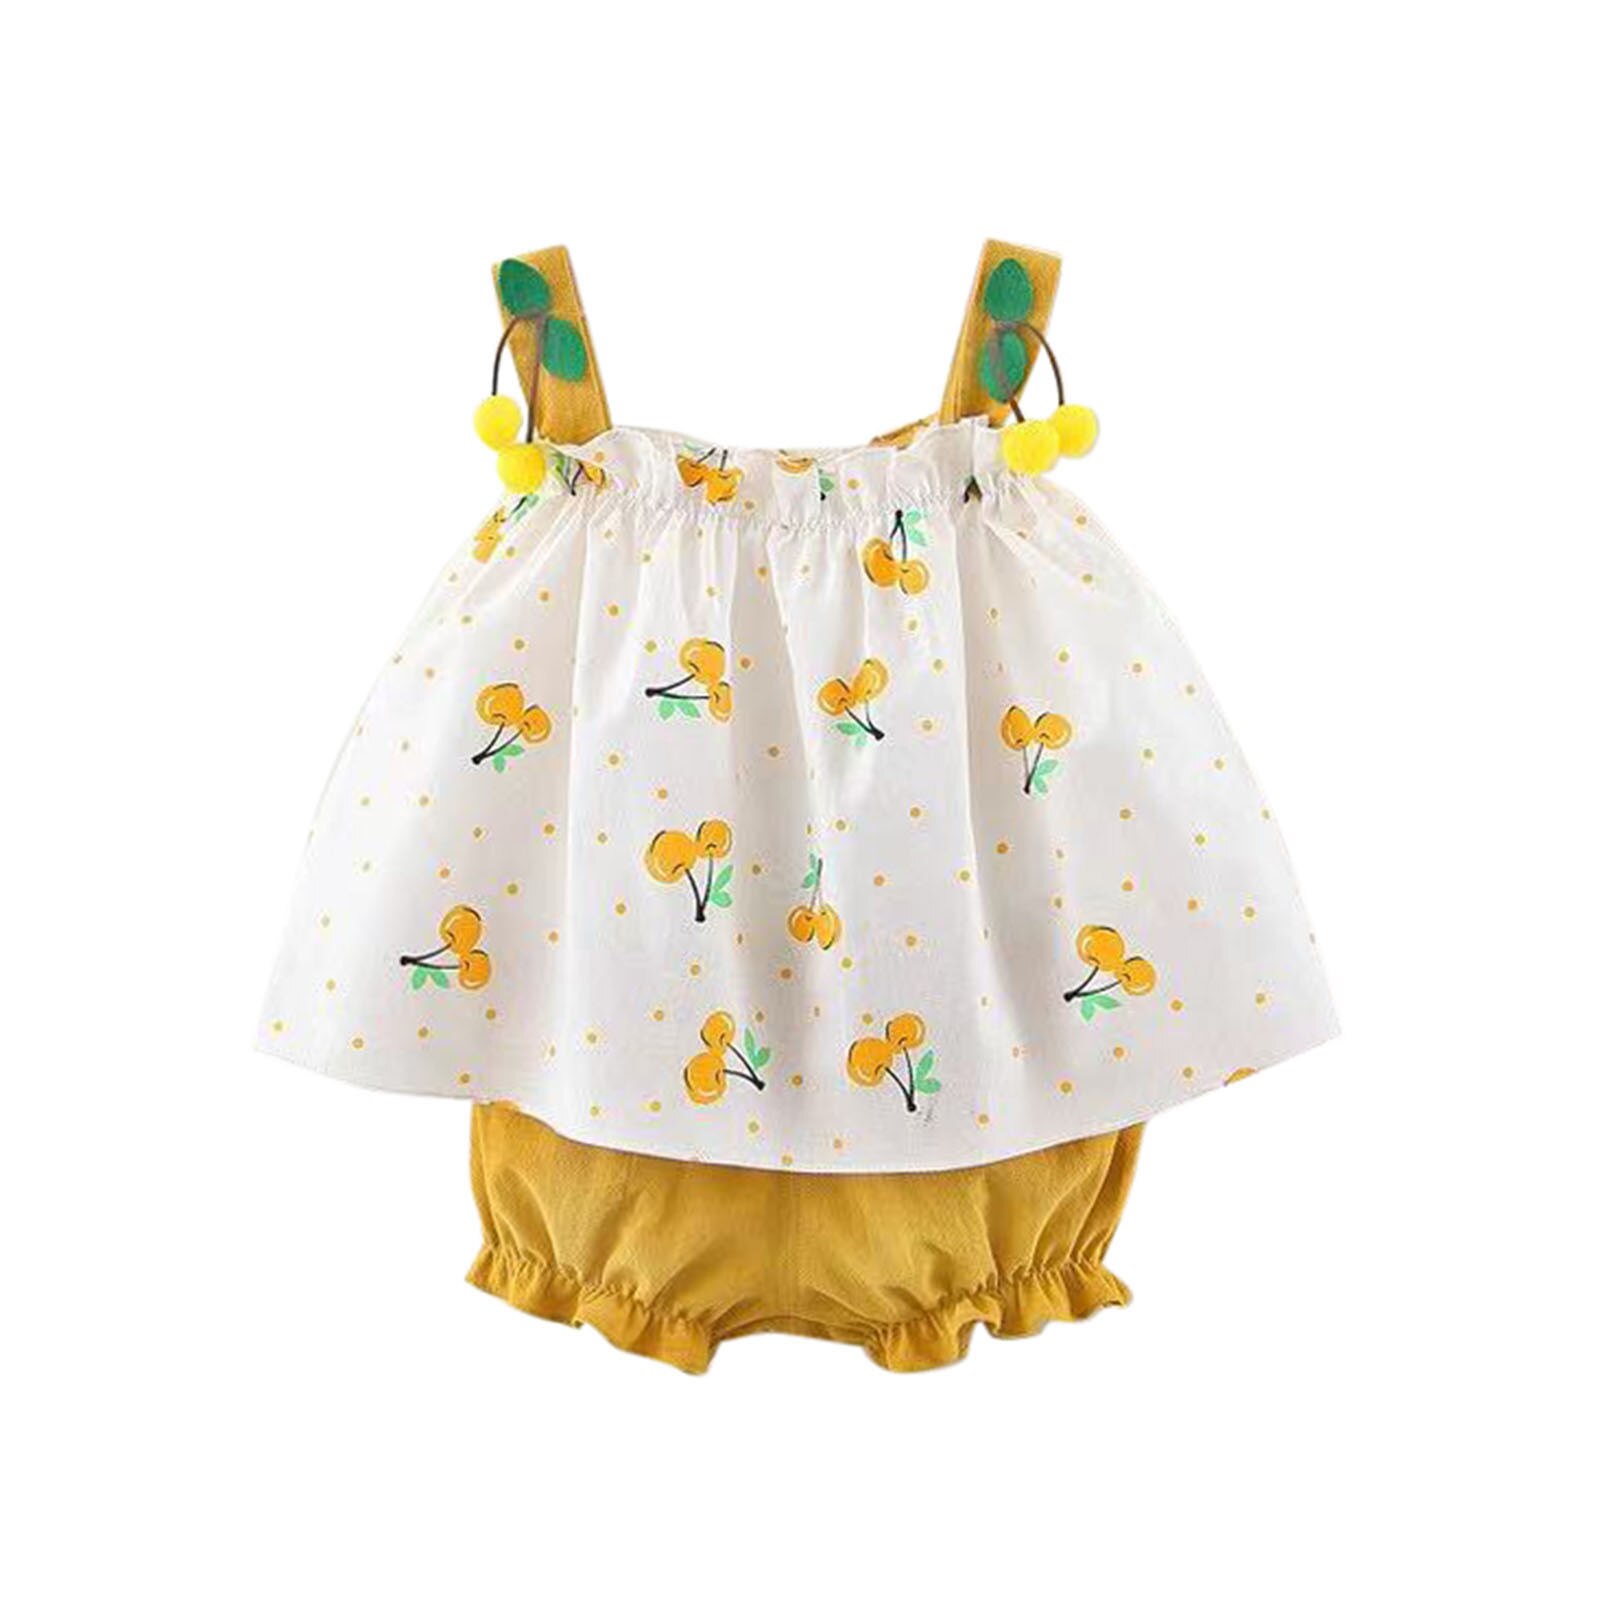 Meisjes Kleding Mouwloze Jurk Baby Baby Meisjes Bretels Polka Dot Print Jurk Tops Shorts Outfits Kinderkleding Sets: YELLOW / 3T